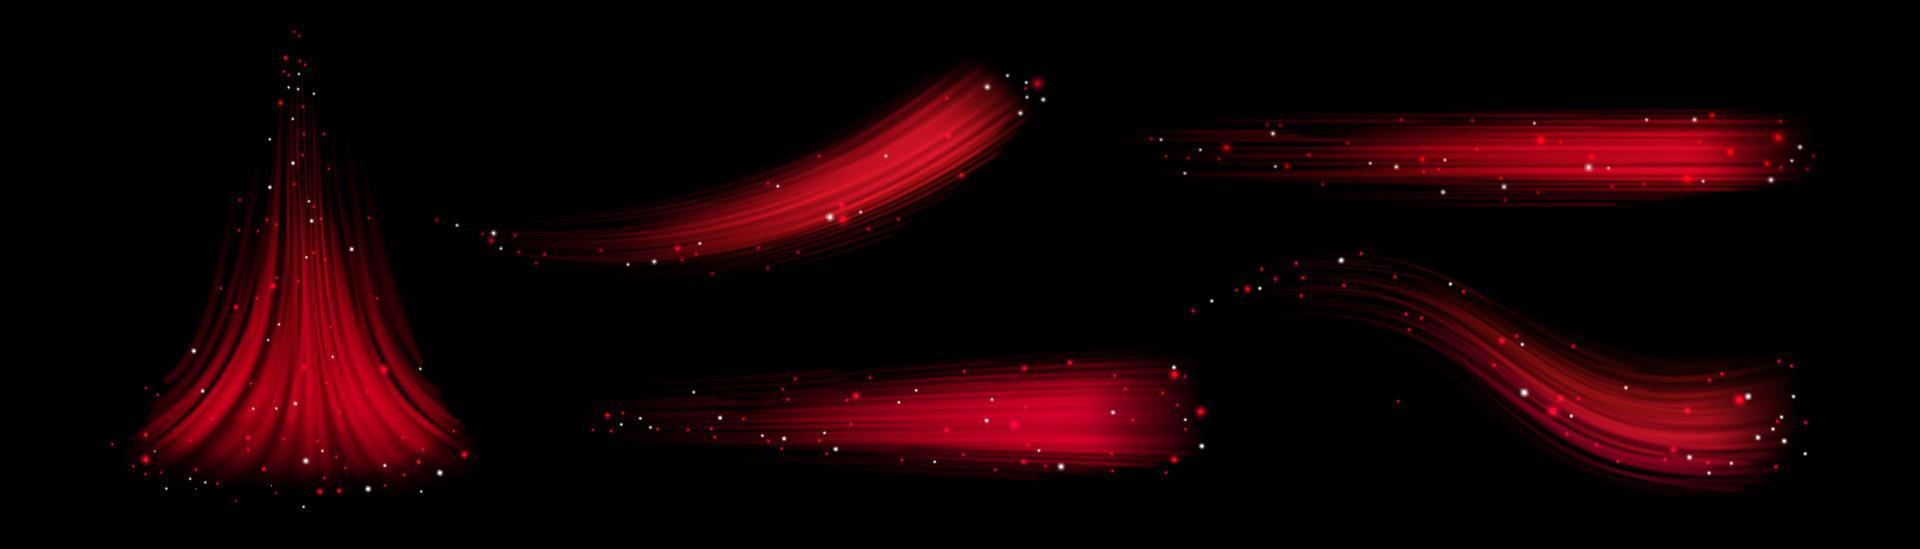 conjunto de fluxo espumante vermelho sobre fundo preto vetor